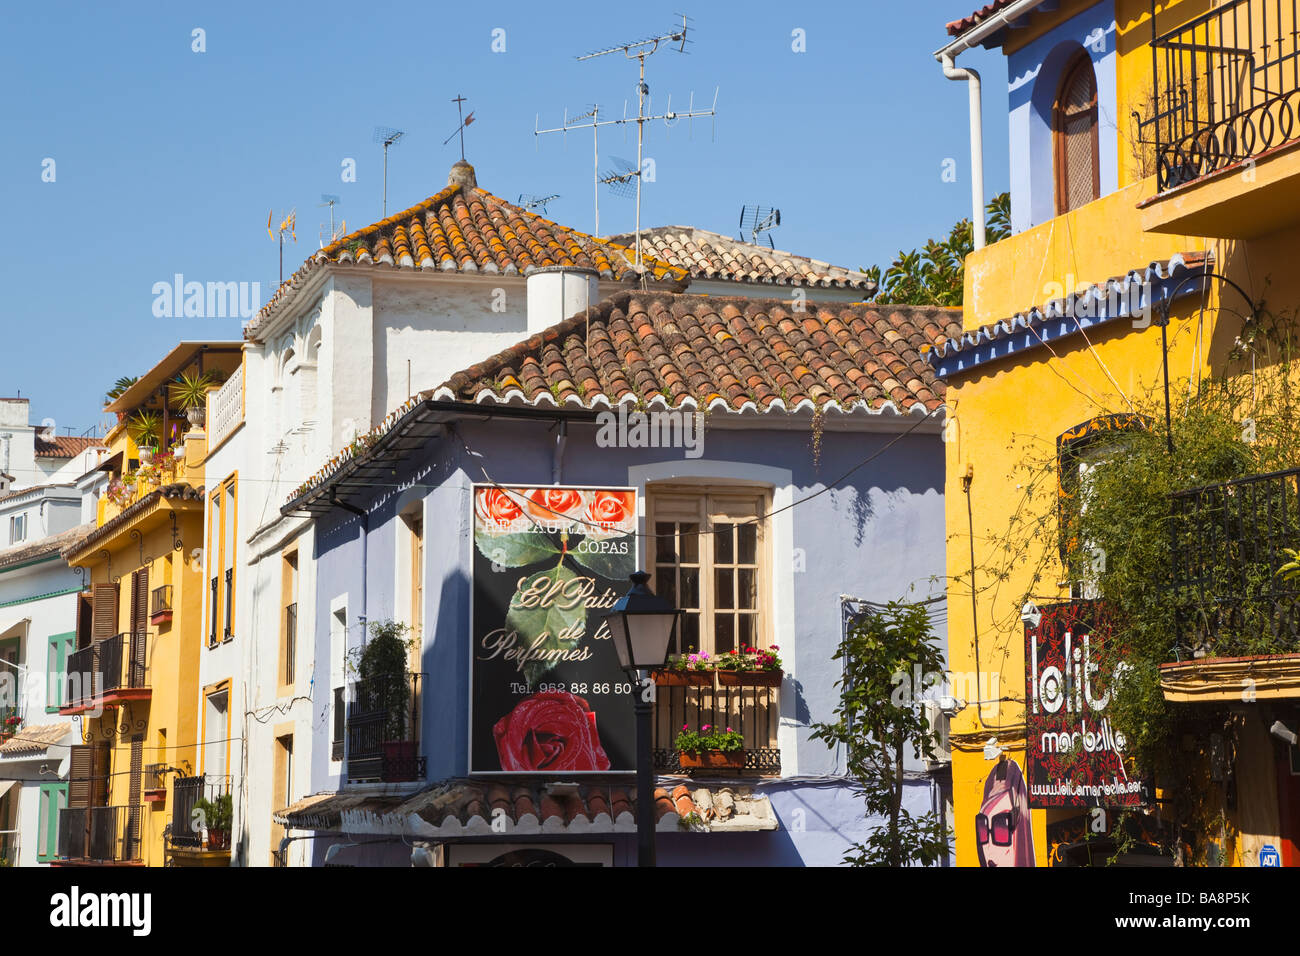 Marbella Malaga Province Costa del Sol Spain Typical architecture Stock Photo